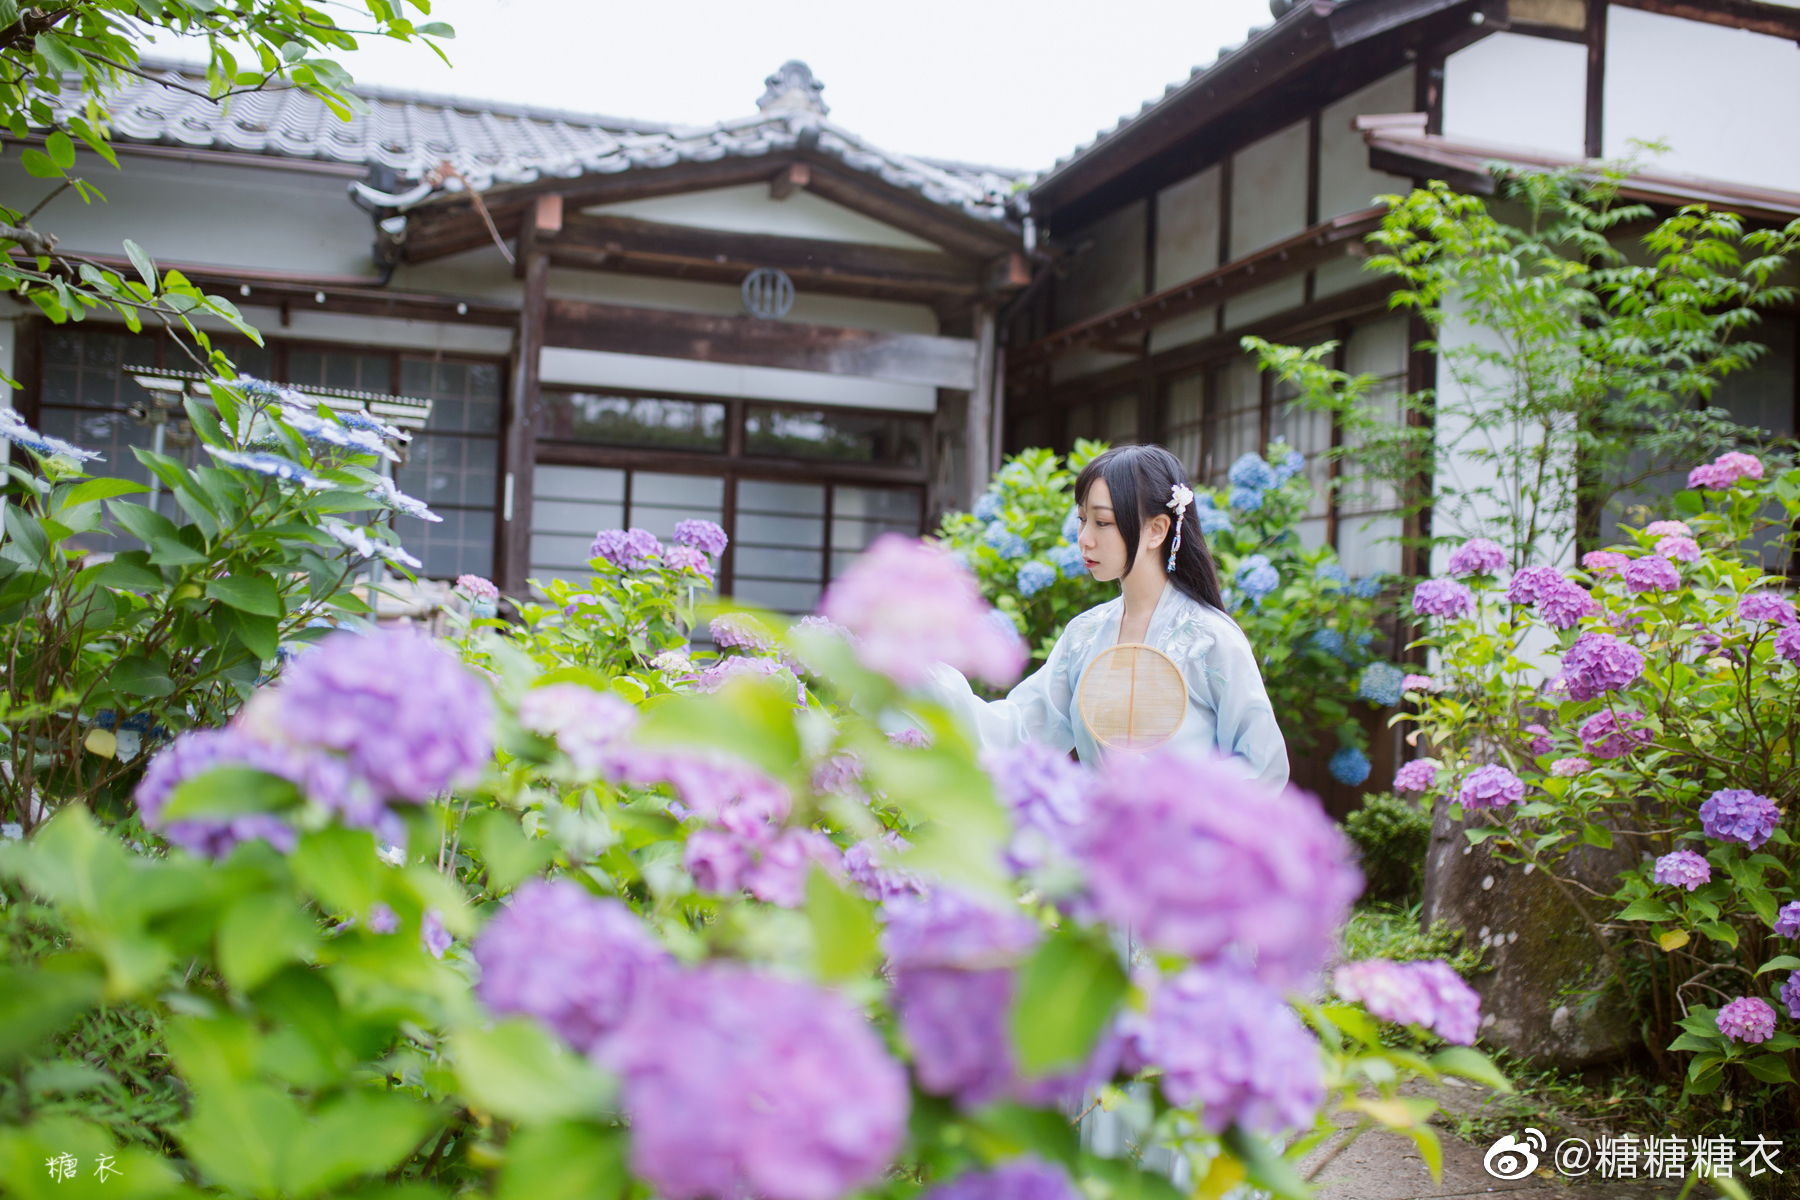 上一个夏天在日本的紫阳花游记我整理好啦